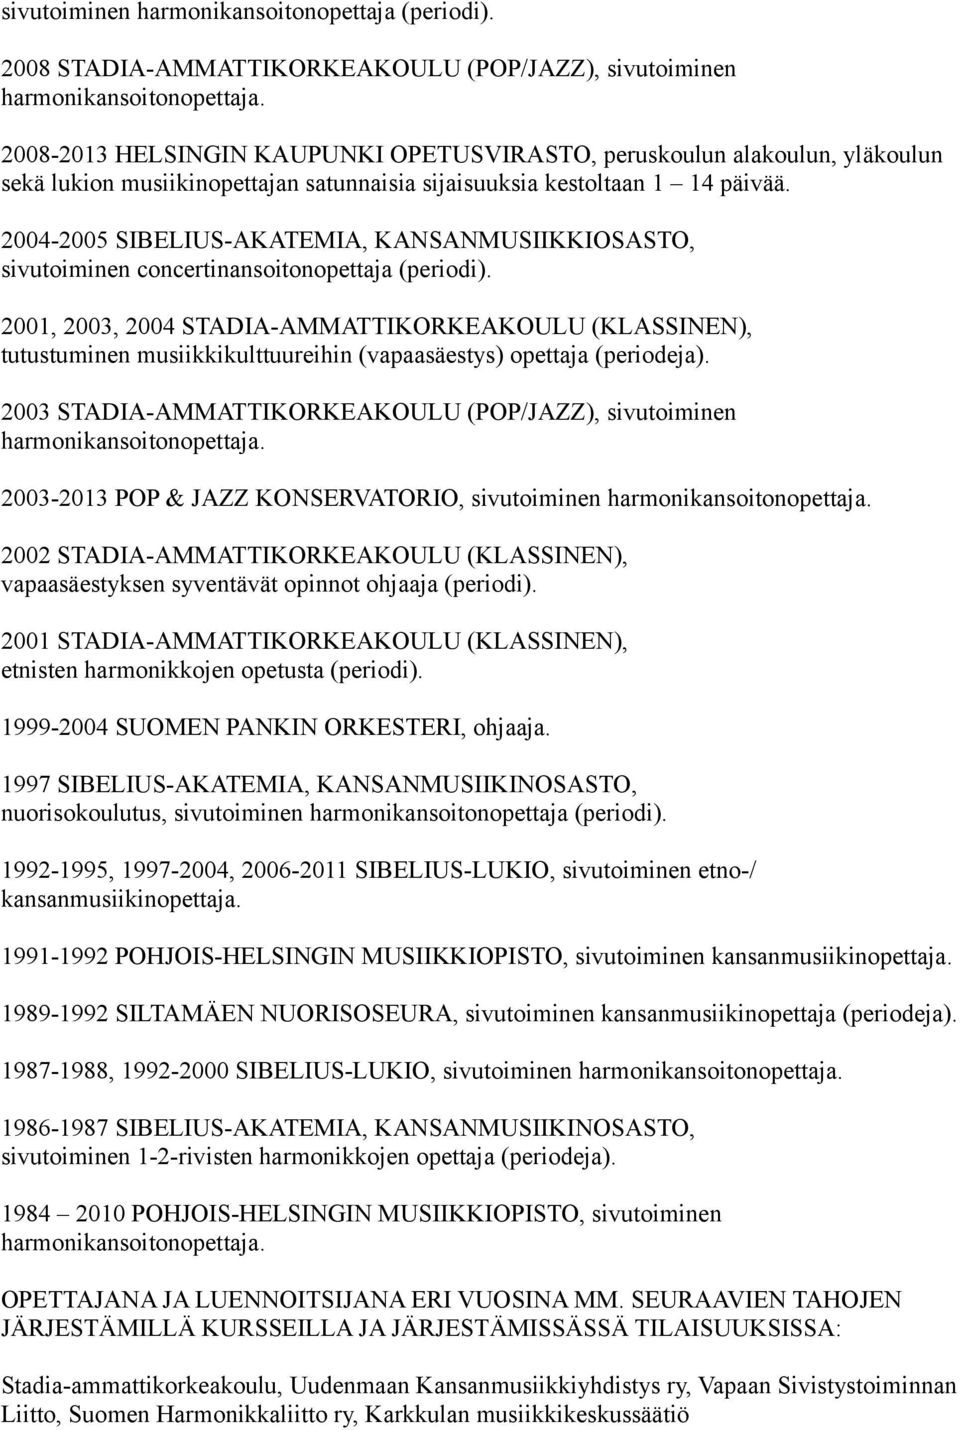 2004-2005 SIBELIUS-AKATEMIA, KANSANMUSIIKKIOSASTO, sivutoiminen concertinansoitonopettaja (periodi).